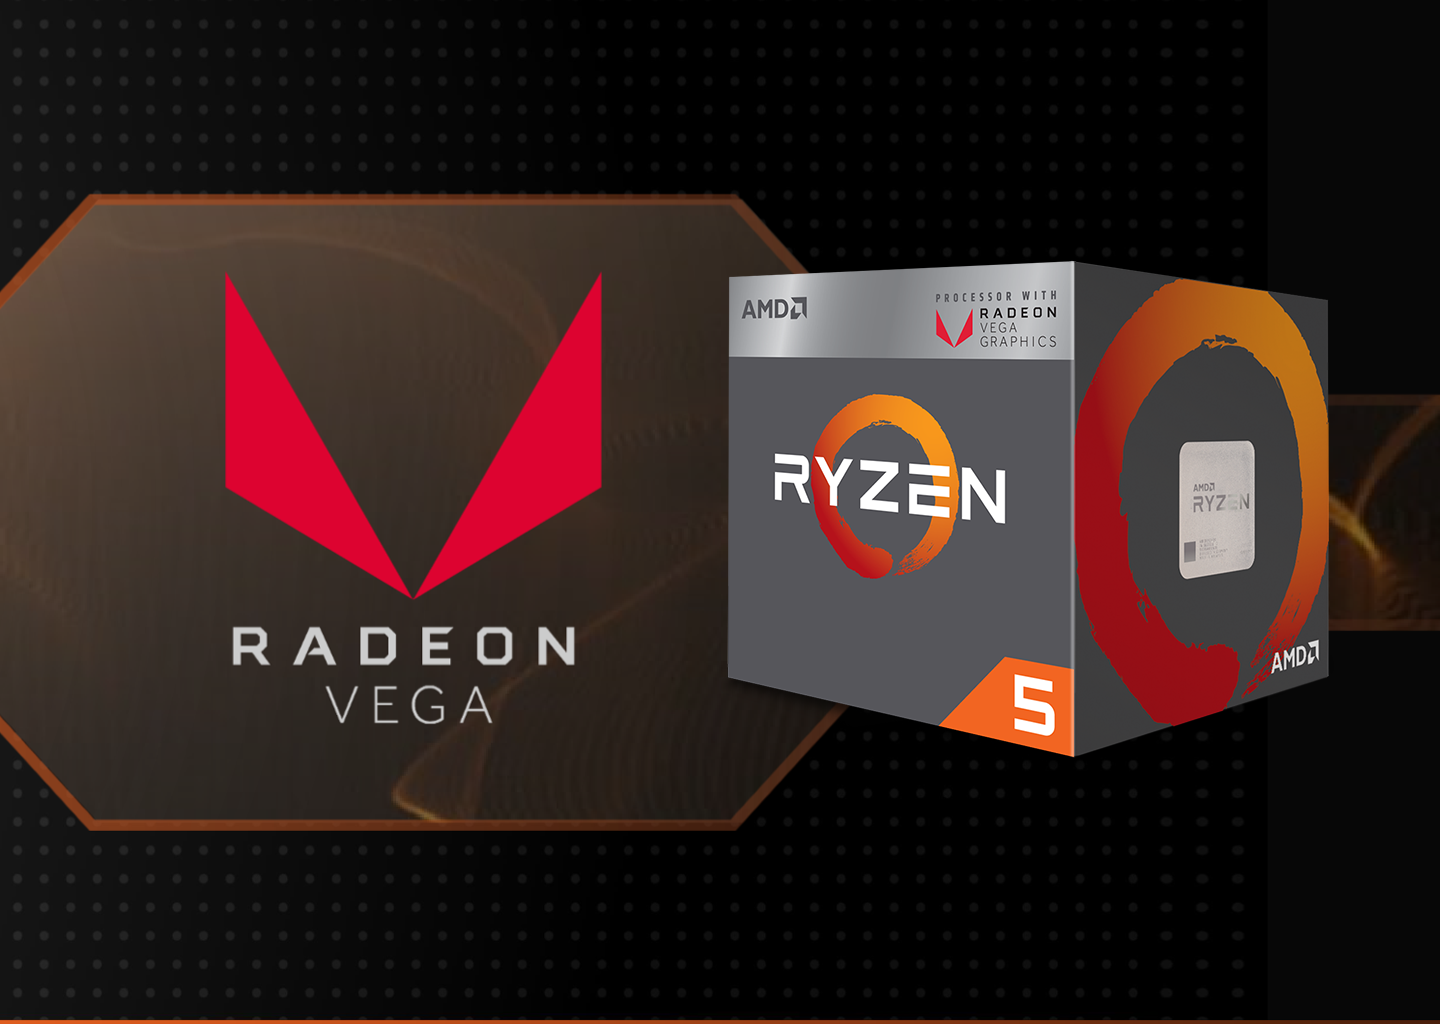 Ryzen 5 radeon graphics. AMD Ryzen 5 релиз. AMD Radeon TM Vega 8 Graphics. ASUS Ryzen 5 Radeon Vega Graphics. AMD Radeon 5 процессор.